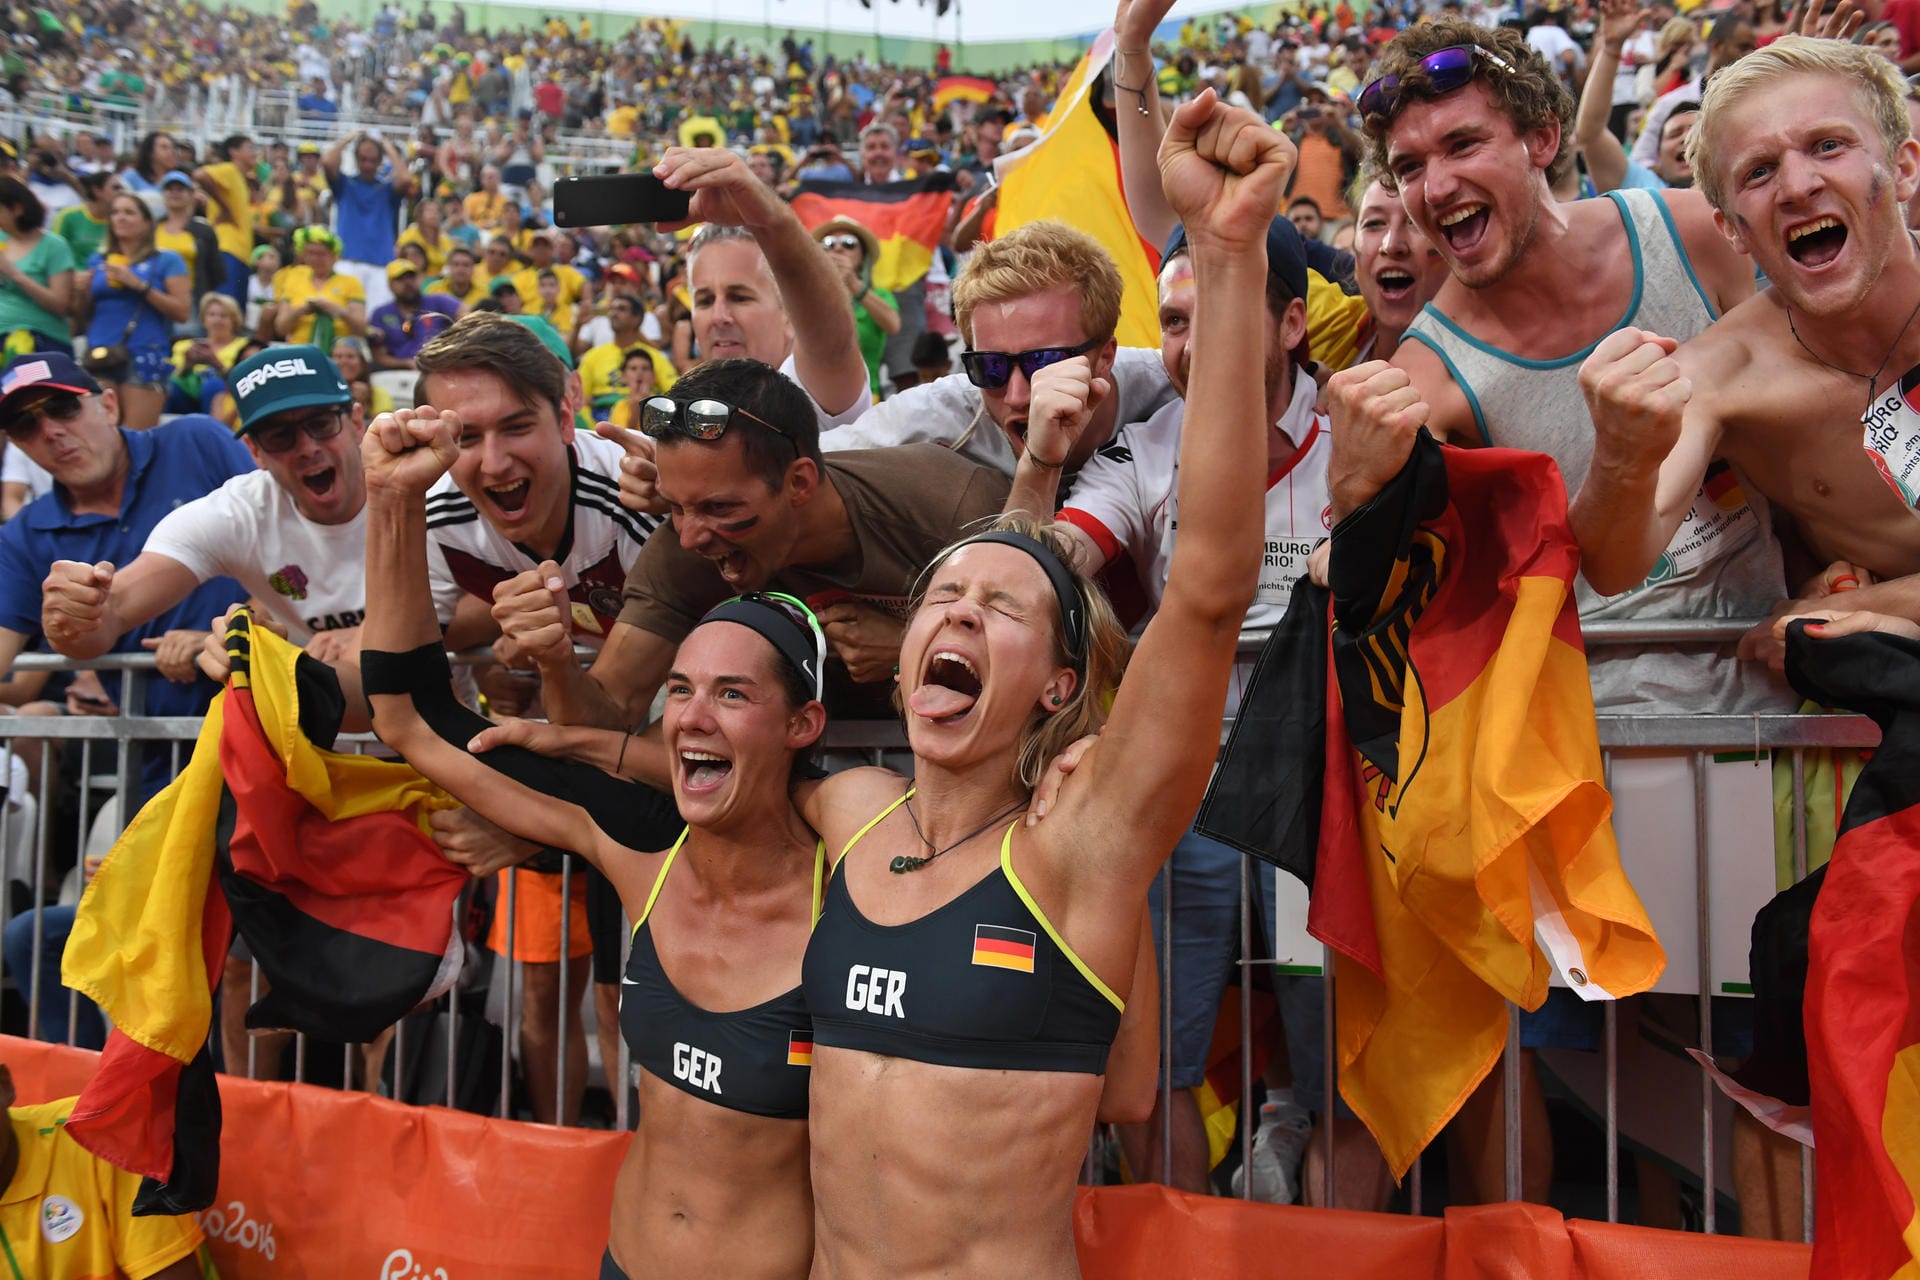 An der Copacabana jubelt Schwarz-Rot-Gold! Die Beachvolleyballerinnen Kira Walkenhorst (li.) und Laura Ludwig (re.) feiern mit deutschen Fans ihren Einzug ins olympische Finale. Die Weltranglistenersten besiegten in ihrem Halbfinale die Brasilianerinnen Larissa/Talita in 2:0- Sätzen mit 21:18, 21:12 und dürfen weiter von der Goldmedaille träumen.